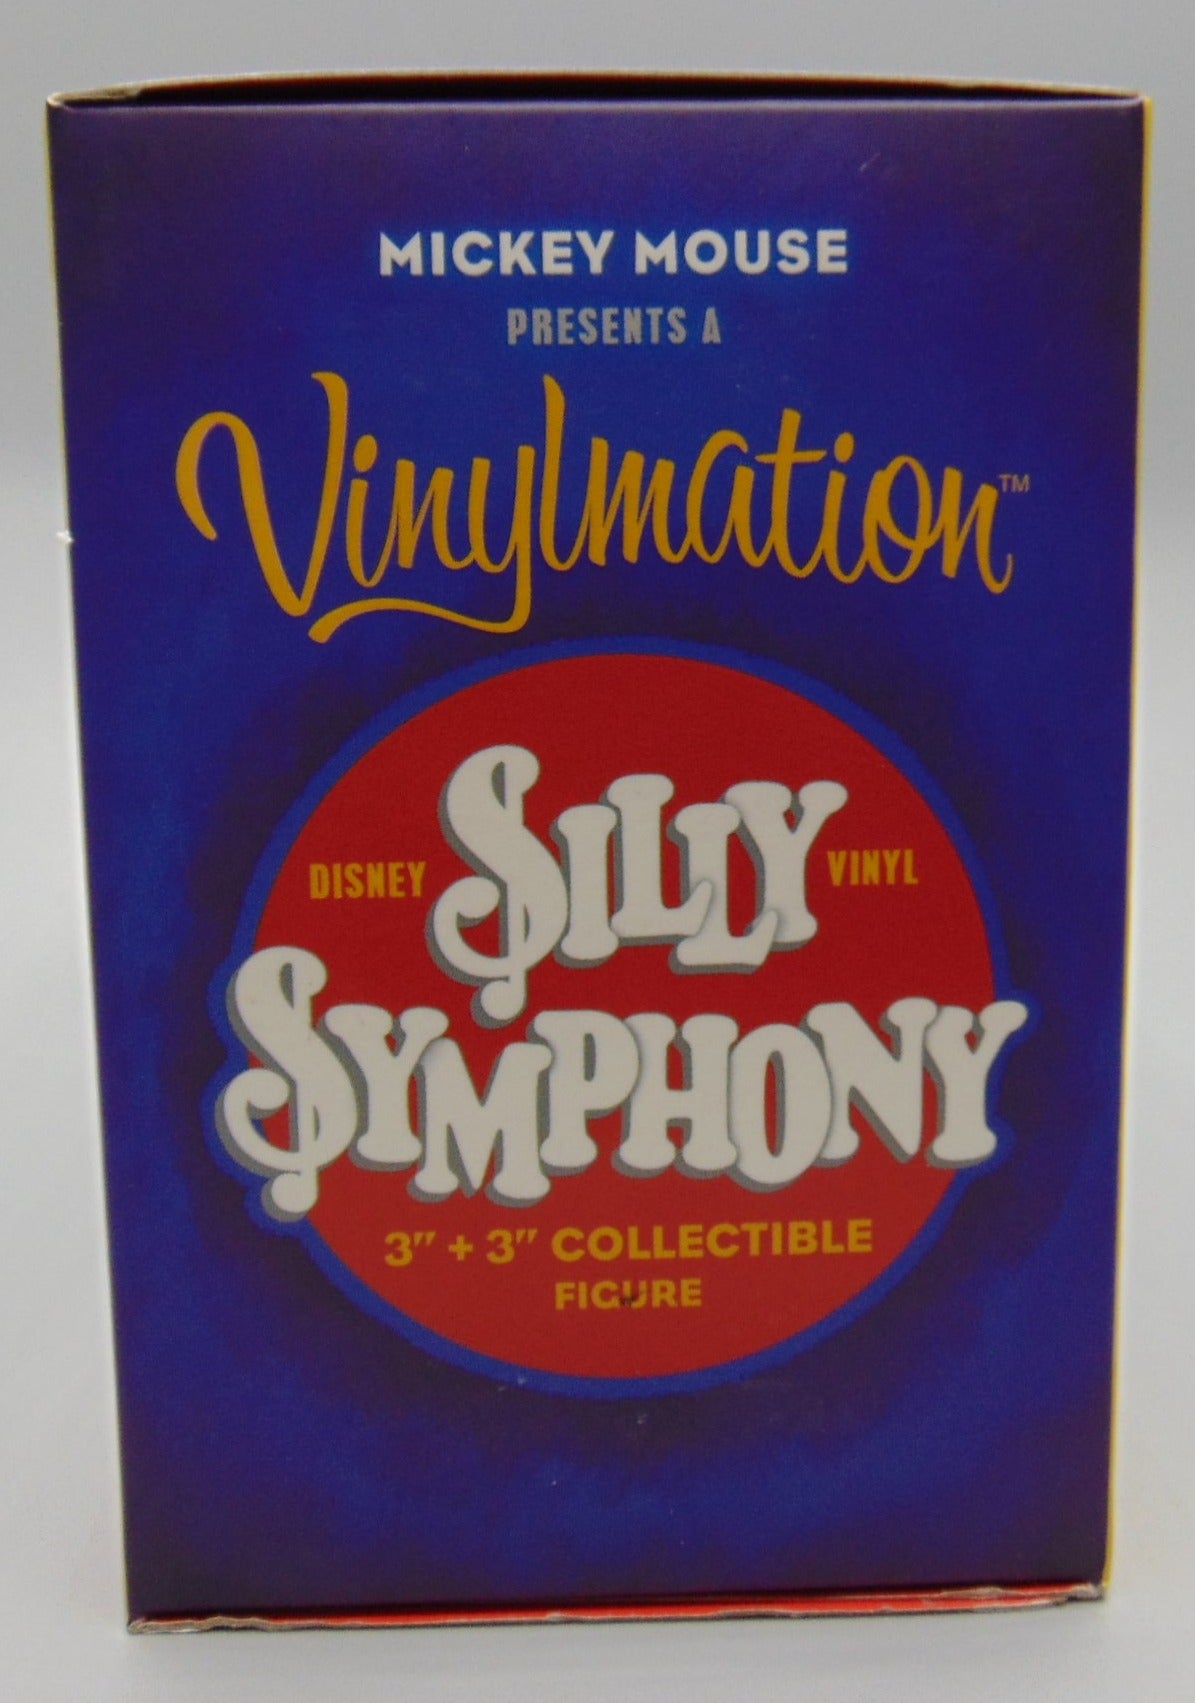 Silly Symphony 3+3 - Vinylmation